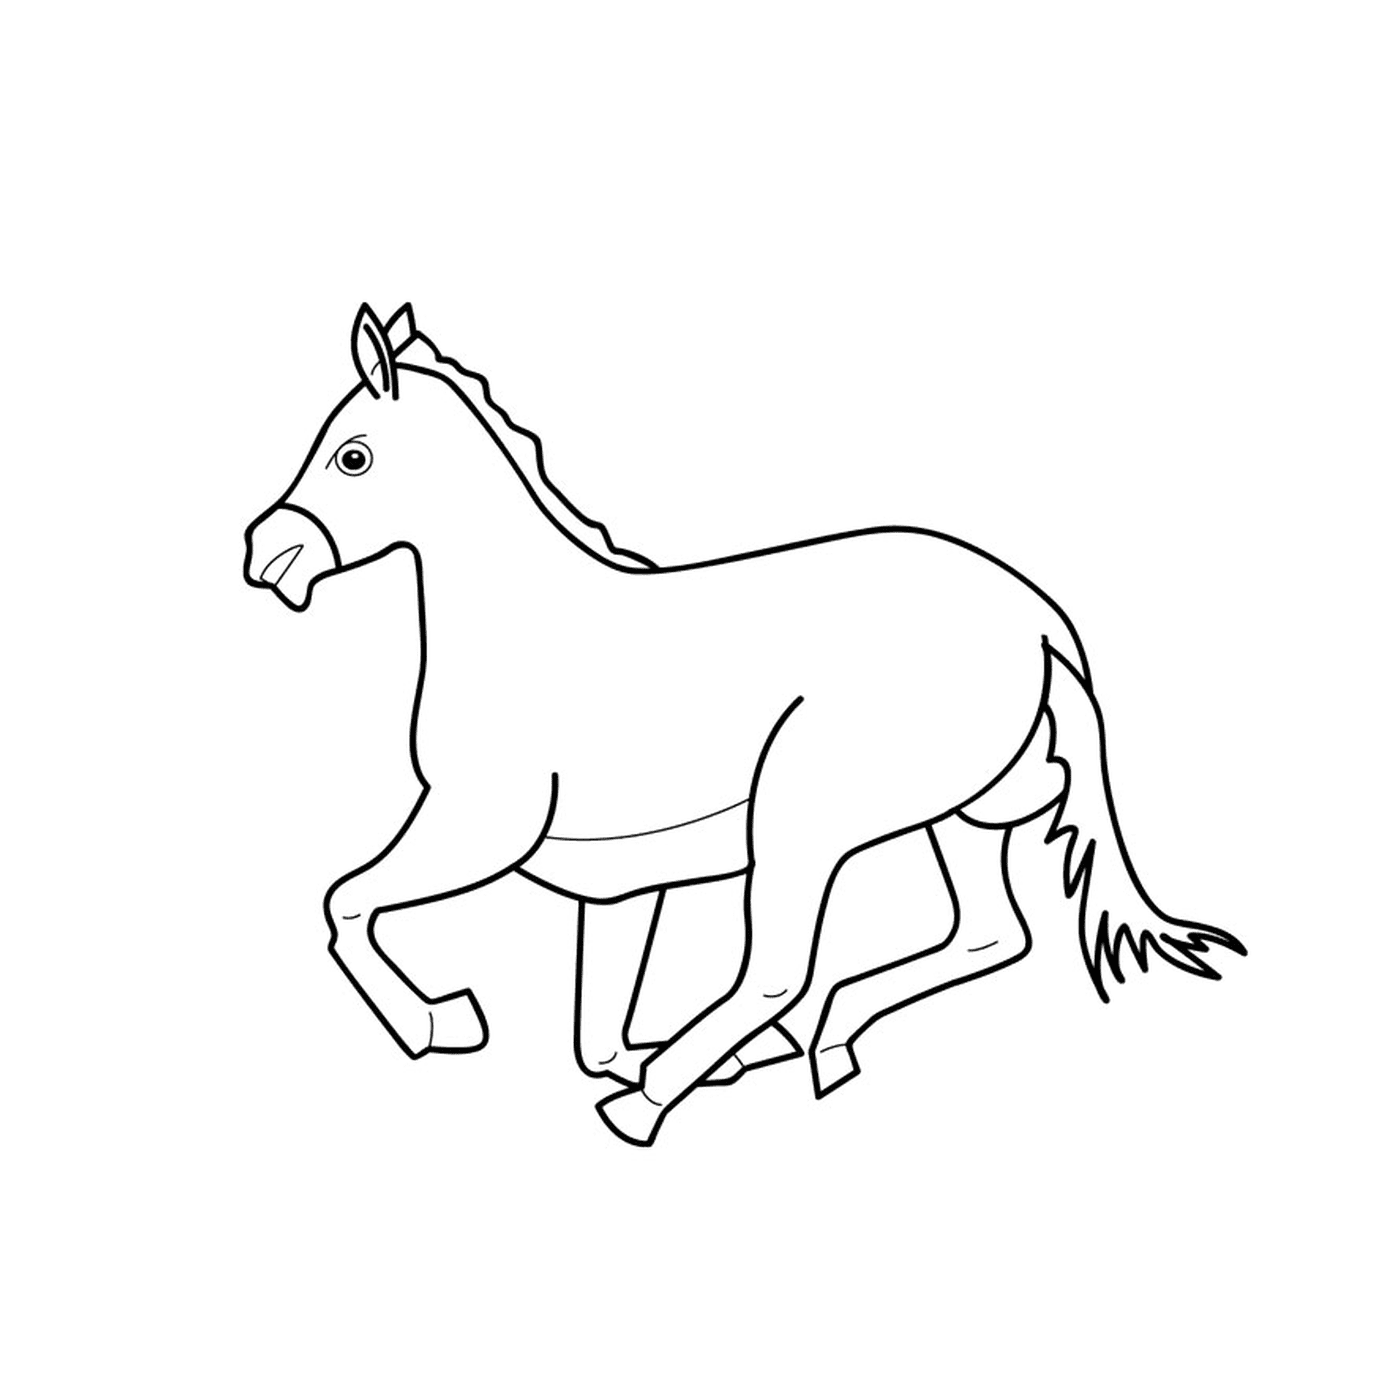  Cavallo con galoppo - Un cavallo che corre 